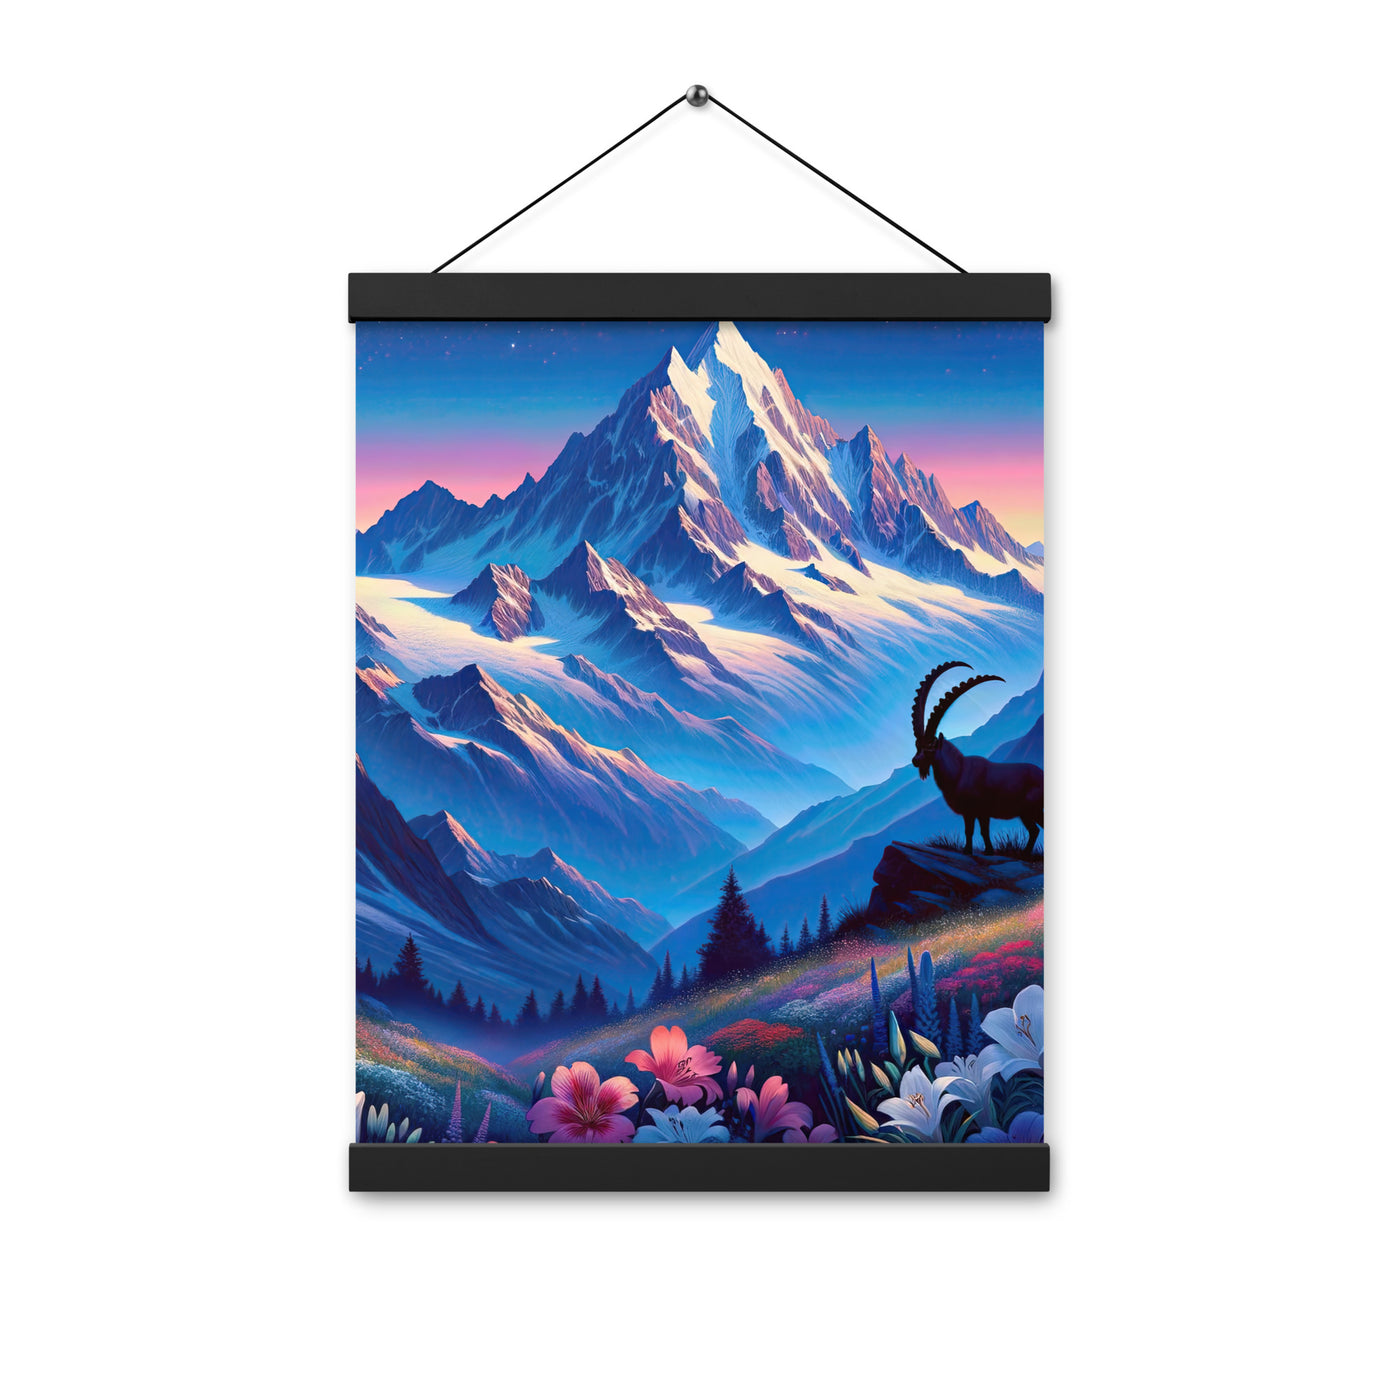 Steinbock bei Dämmerung in den Alpen, sonnengeküsste Schneegipfel - Premium Poster mit Aufhängung berge xxx yyy zzz 30.5 x 40.6 cm